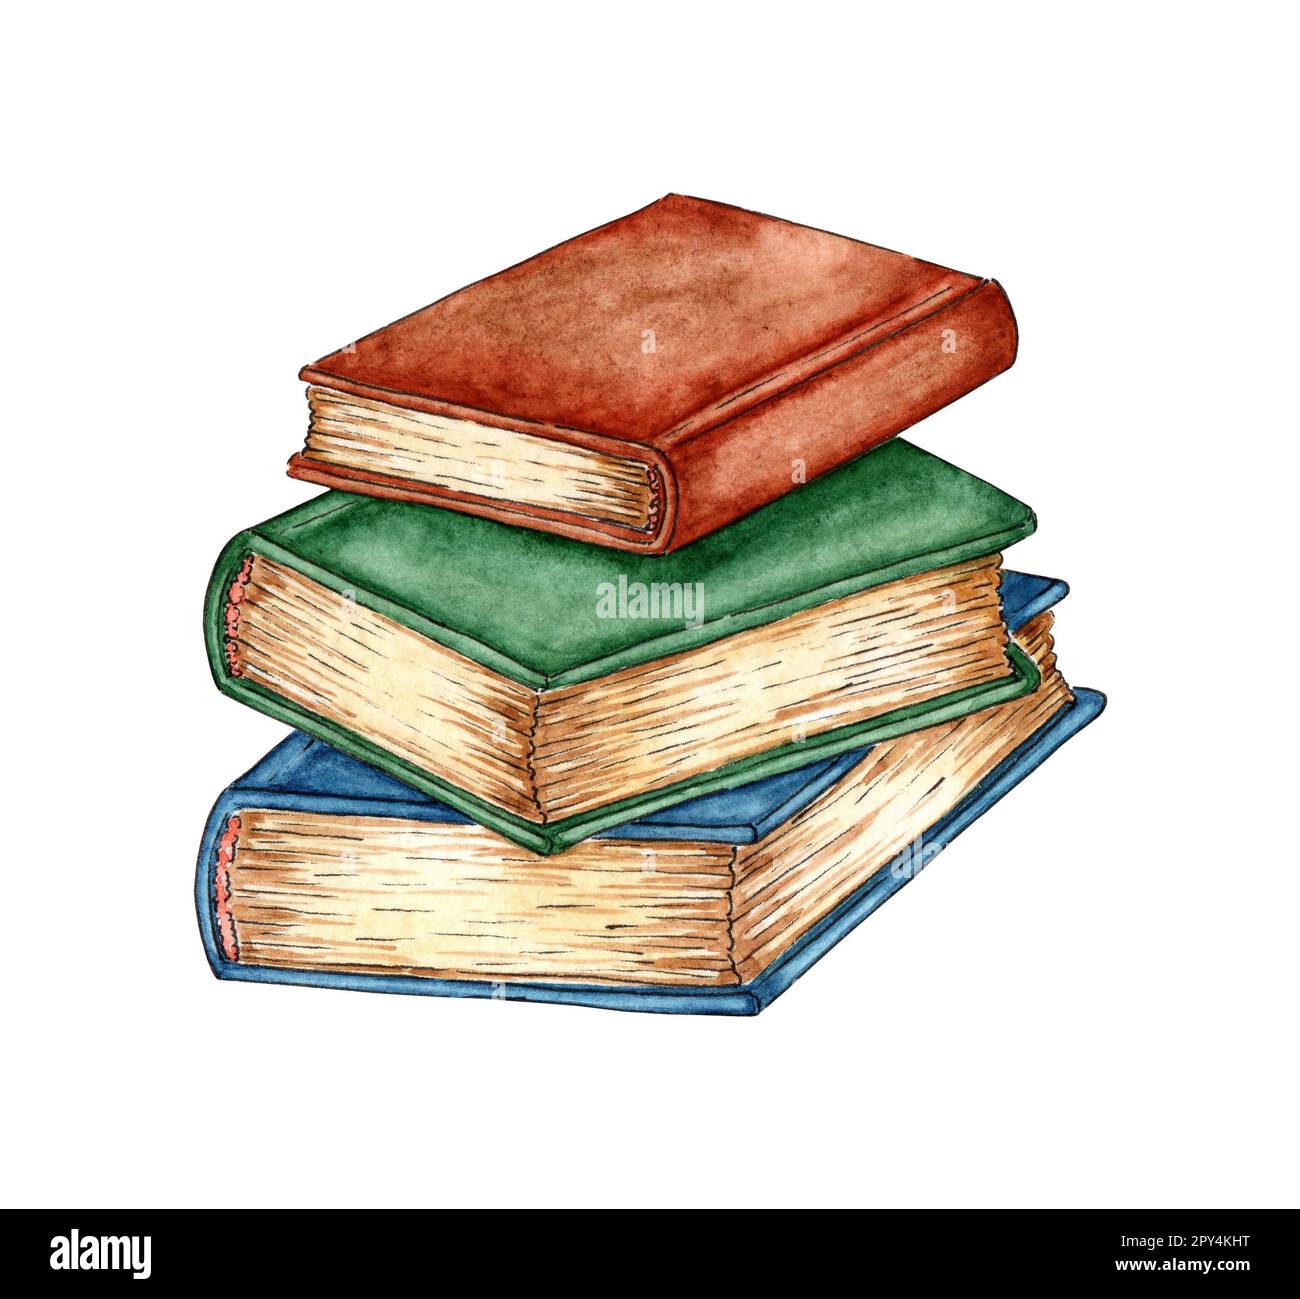 https://c8.alamy.com/compes/2py4kht/ilustracion-de-acuarela-de-una-pila-de-libros-antiguos-libros-apilados-uno-encima-del-otro-pila-de-libros-coloridos-regreso-a-la-escuela-boceto-hecho-a-mano-imprimir-2py4kht.jpg